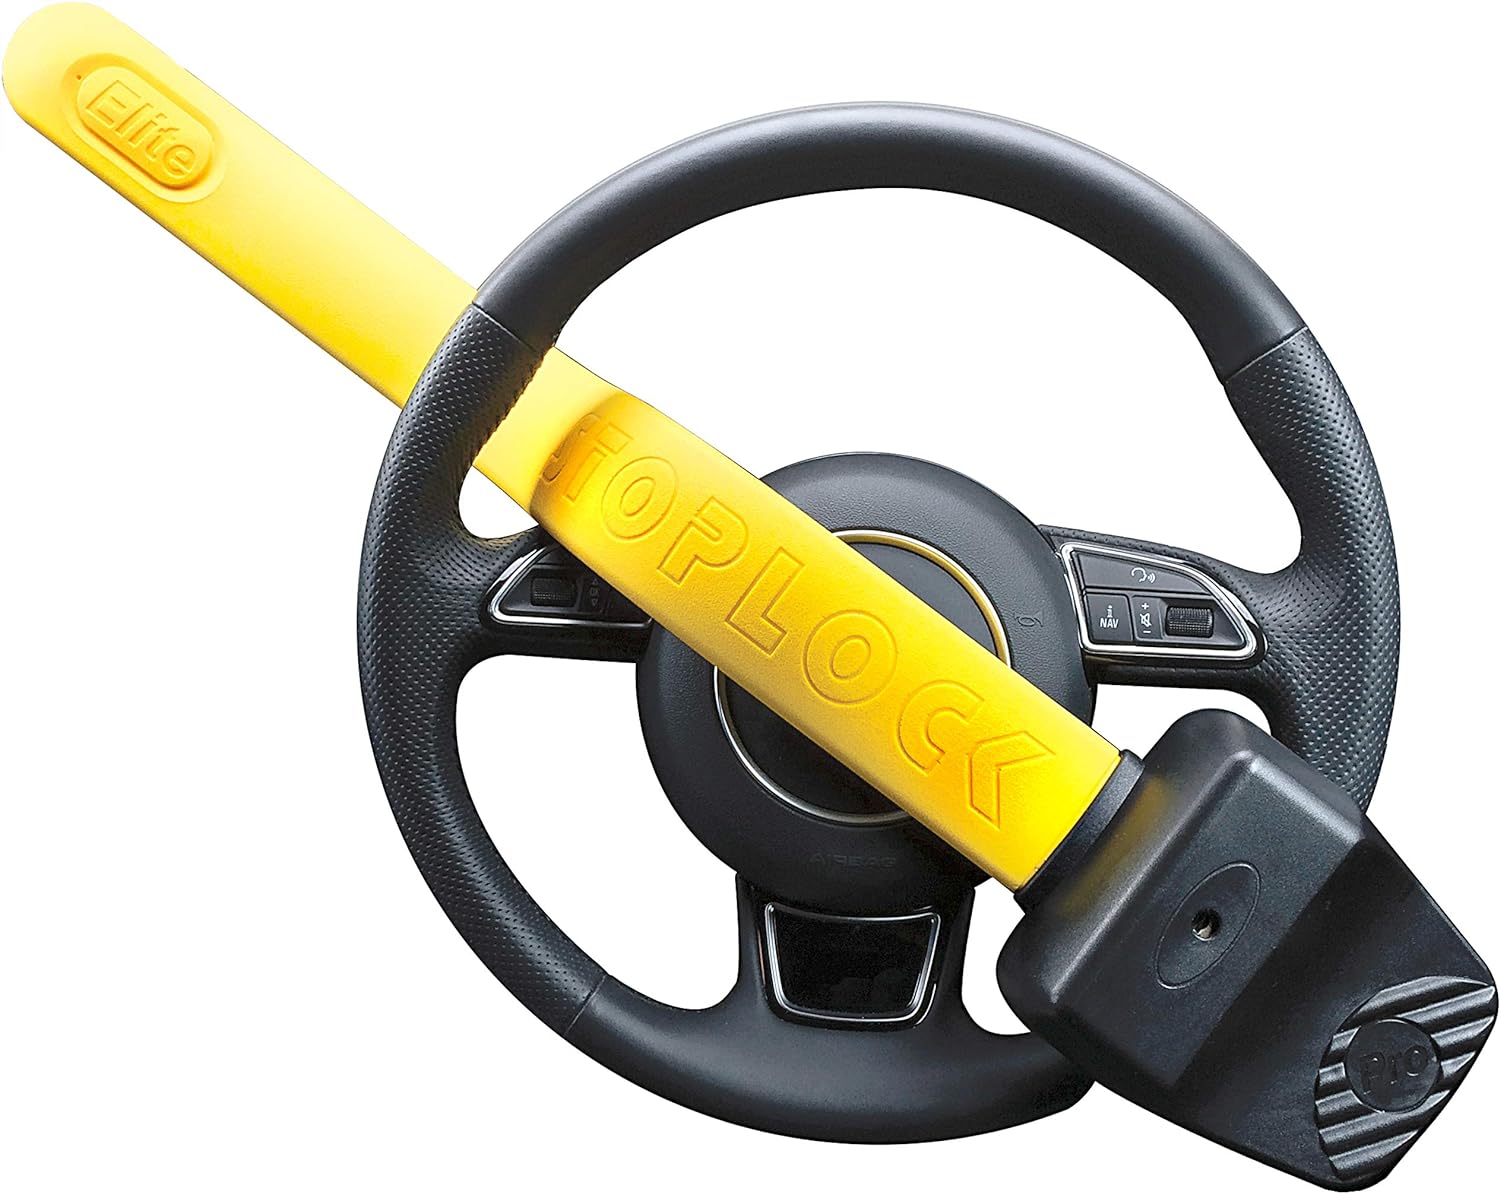 Stoplock 'Pro Elite' - Steering Wheel Lock for Cars - Secure Anti-Theft Device W/Keys